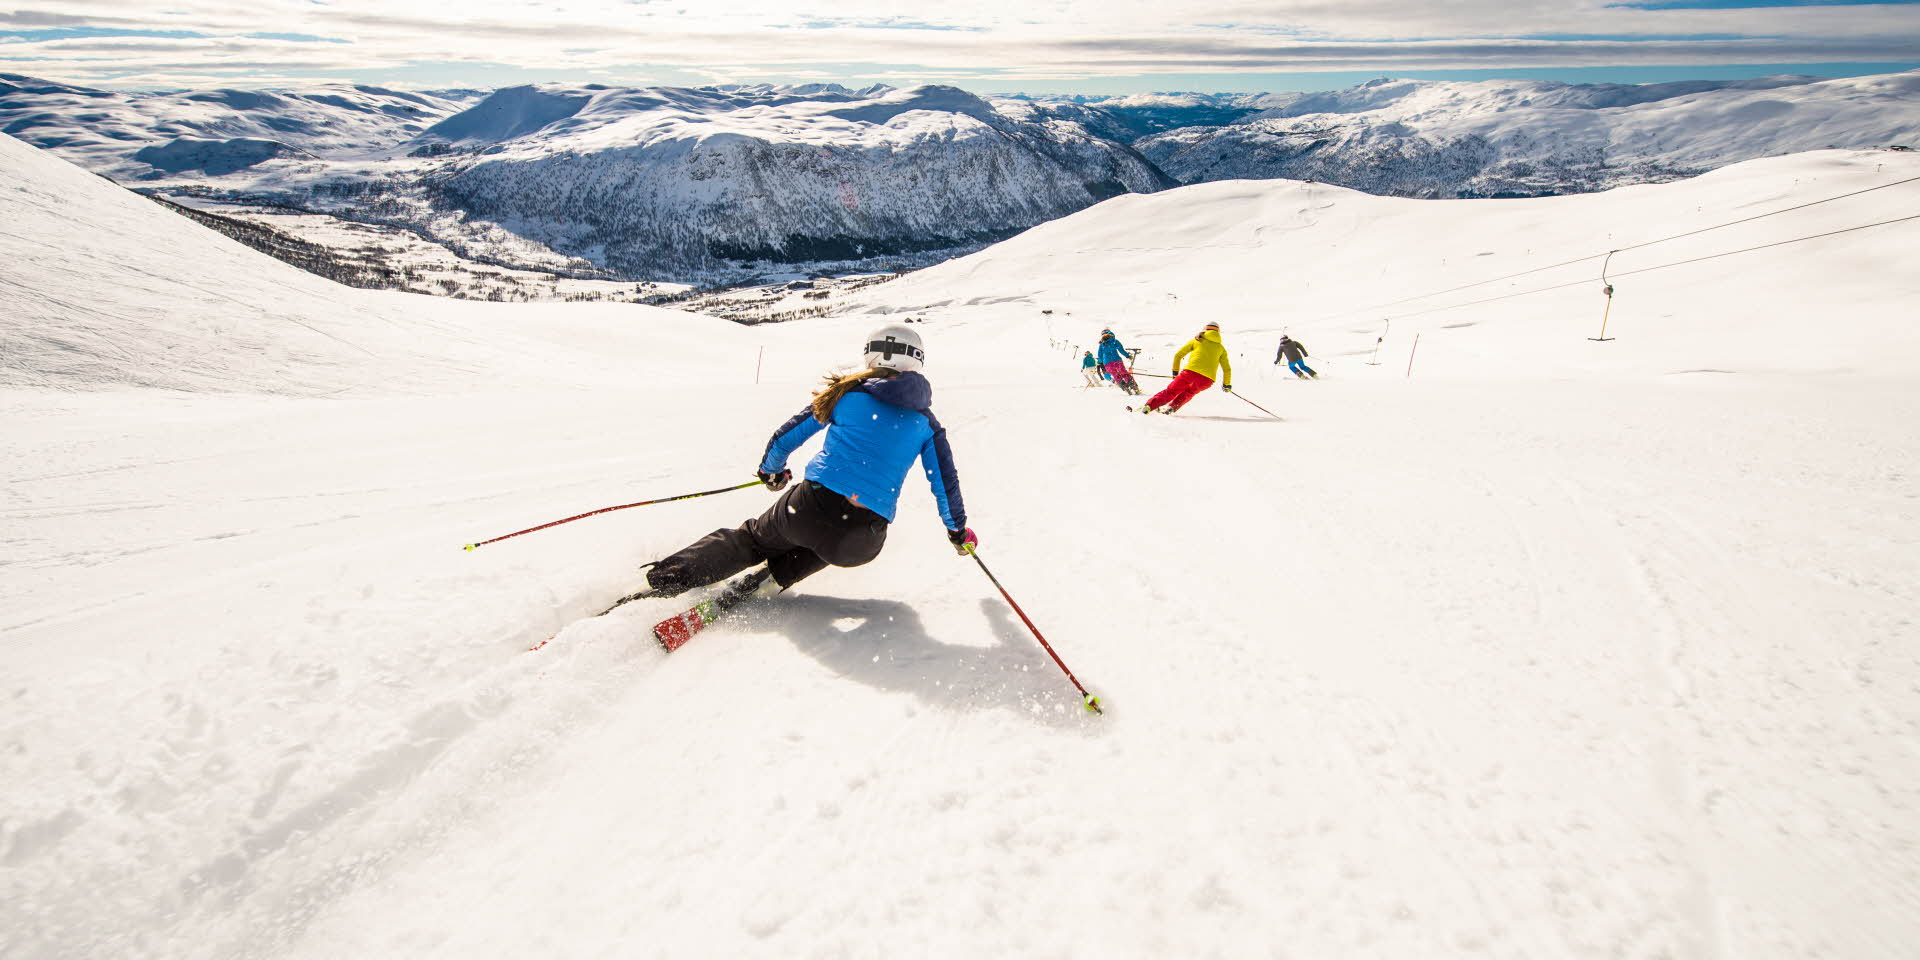 4 Abfahrtsläufer von hinten gesehen, während sie an einem sonnigen Wintertag die Skipisten im Skiresort Myrkdalen hinunterfahren